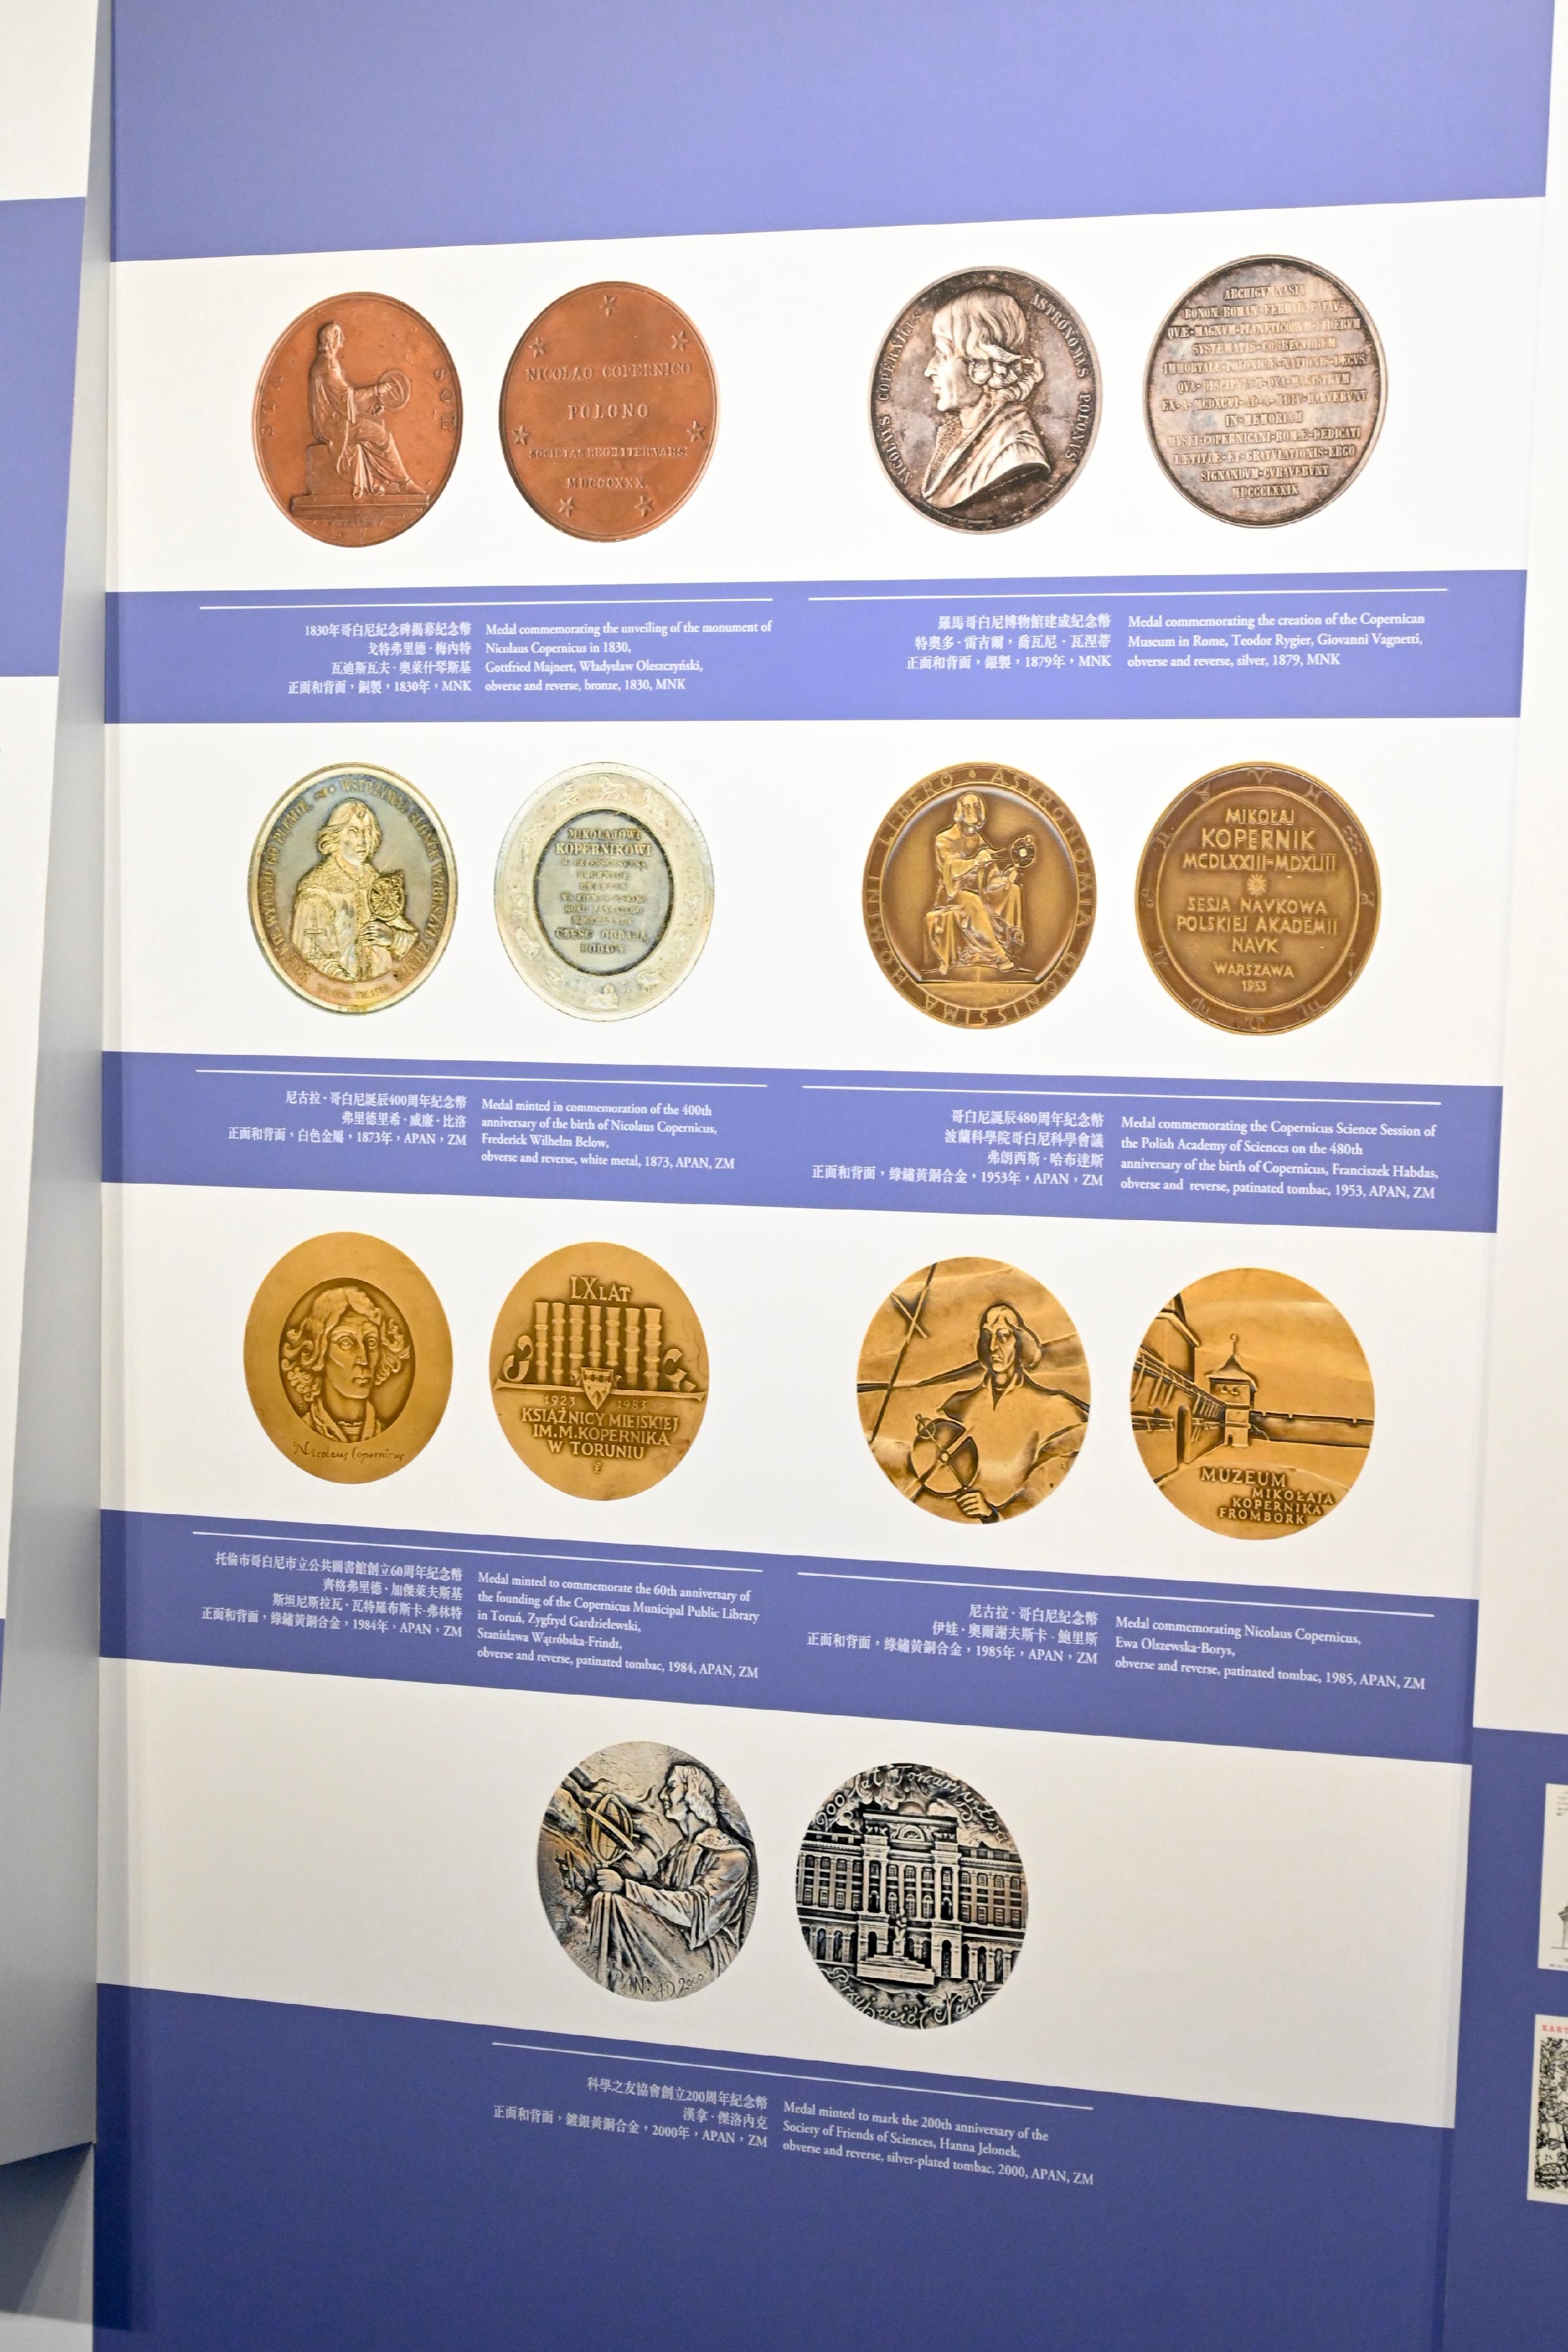 適逢今年是著名波蘭天文學家尼古拉．哥白尼誕生550周年，香港太空館明日（六月二十一日）起推出「尼古拉．哥白尼——生平與成就」專題展覽。圖示不同時期推出的尼古拉．哥白尼紀念幣。